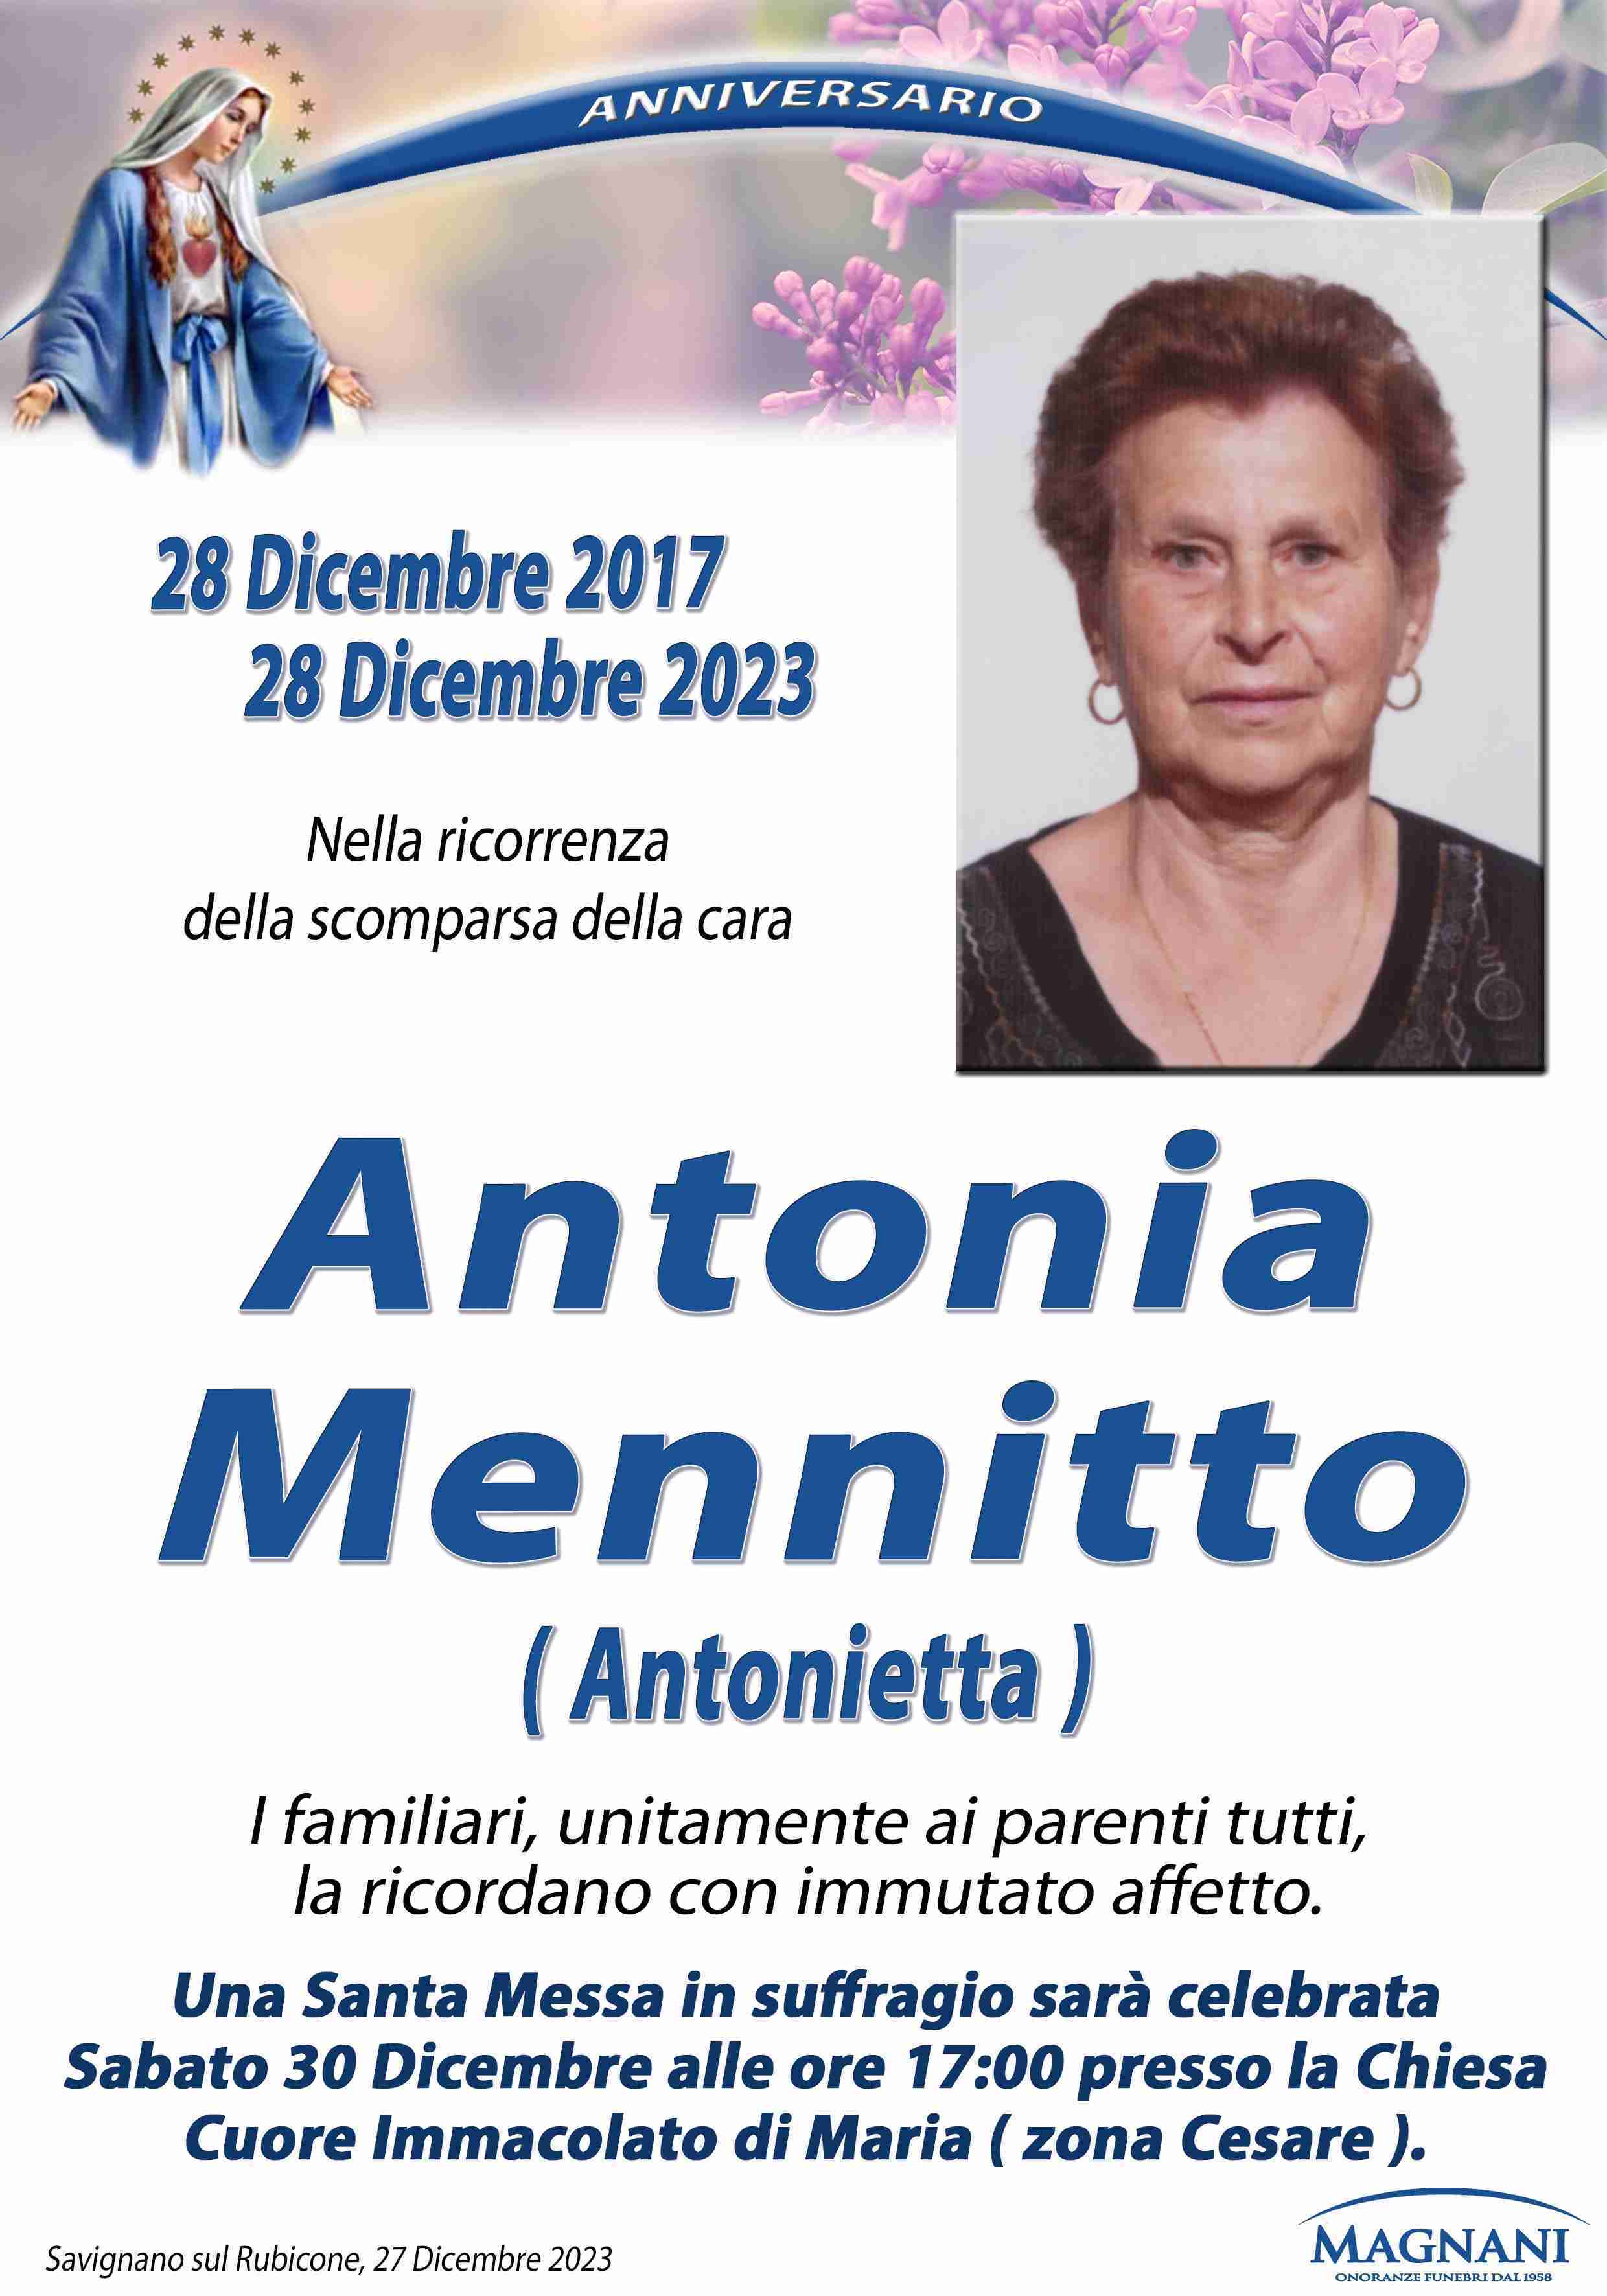 Antonia Mennitto